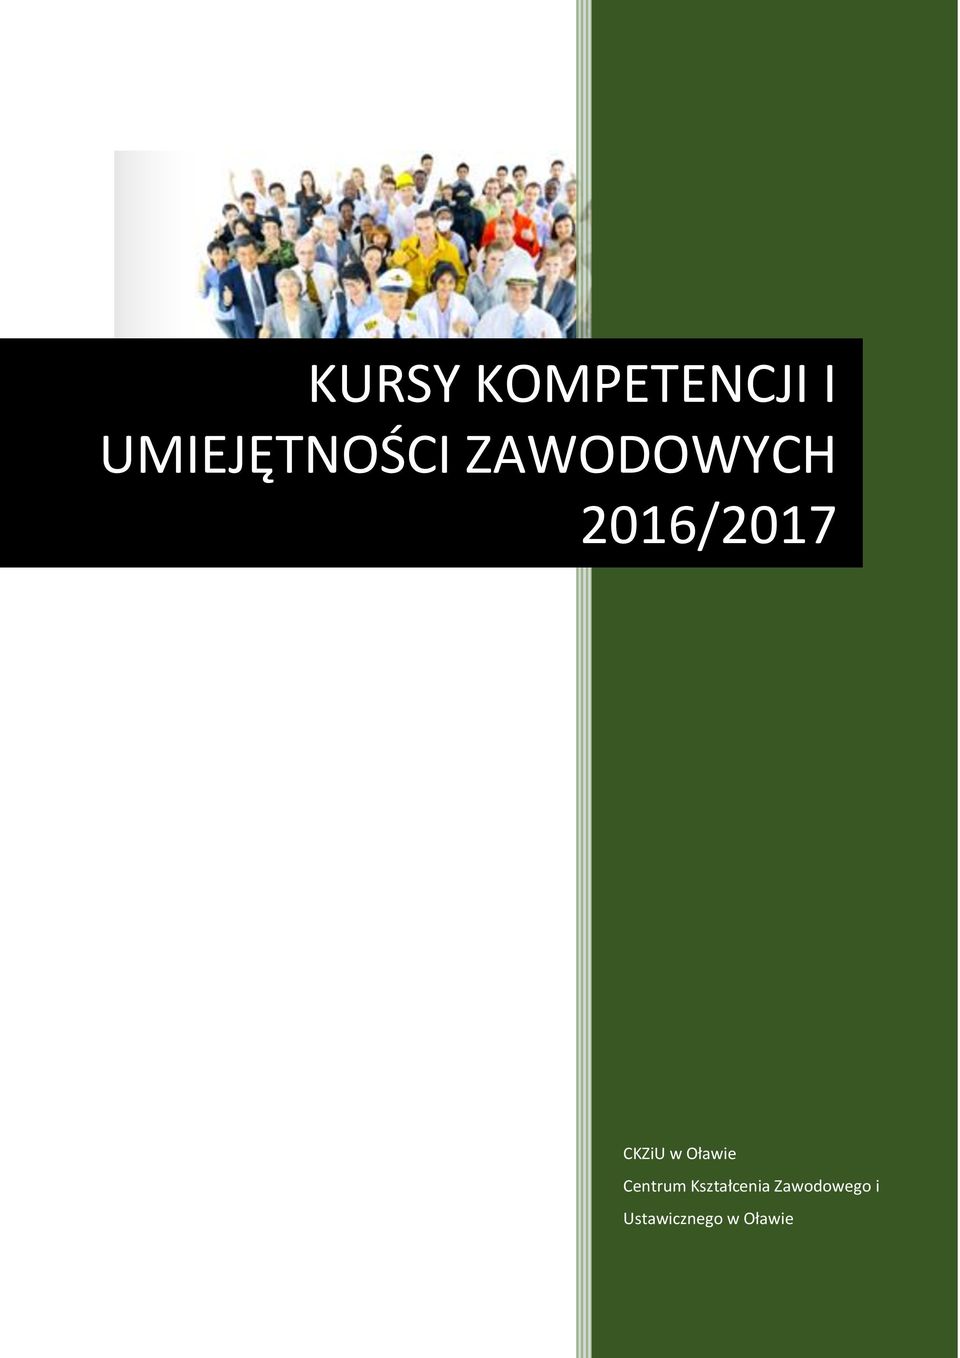 2016/2017 CKZiU w Oławie